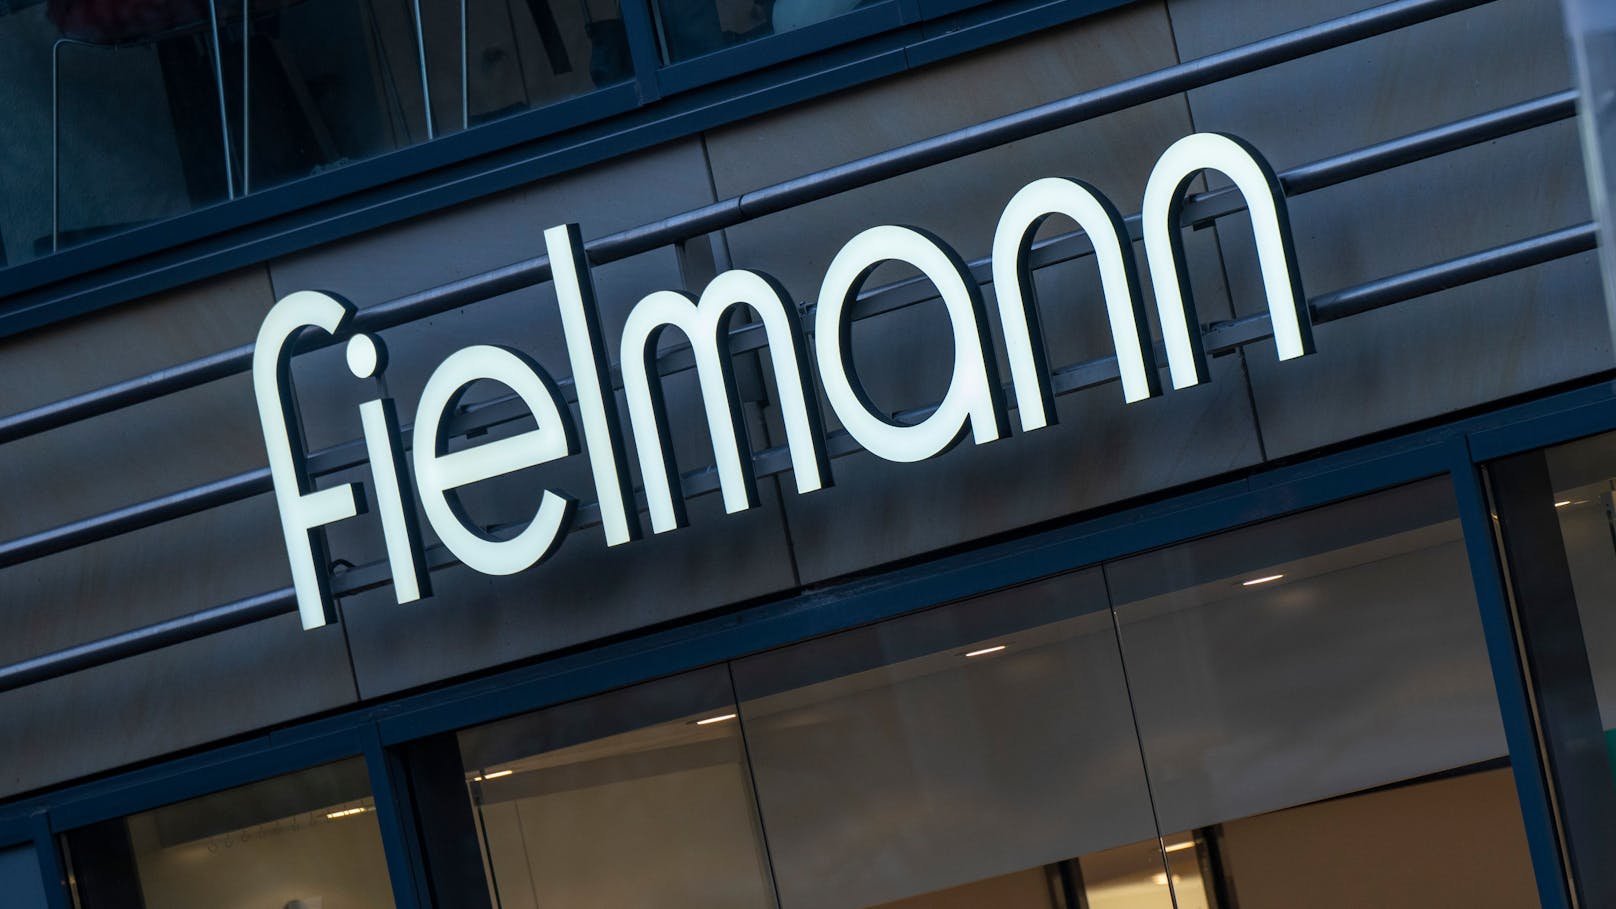 Die Optikerkette Fielmann drückt auf die Kostenbremse und will mehrere hundert Arbeitsplätze abbauen.